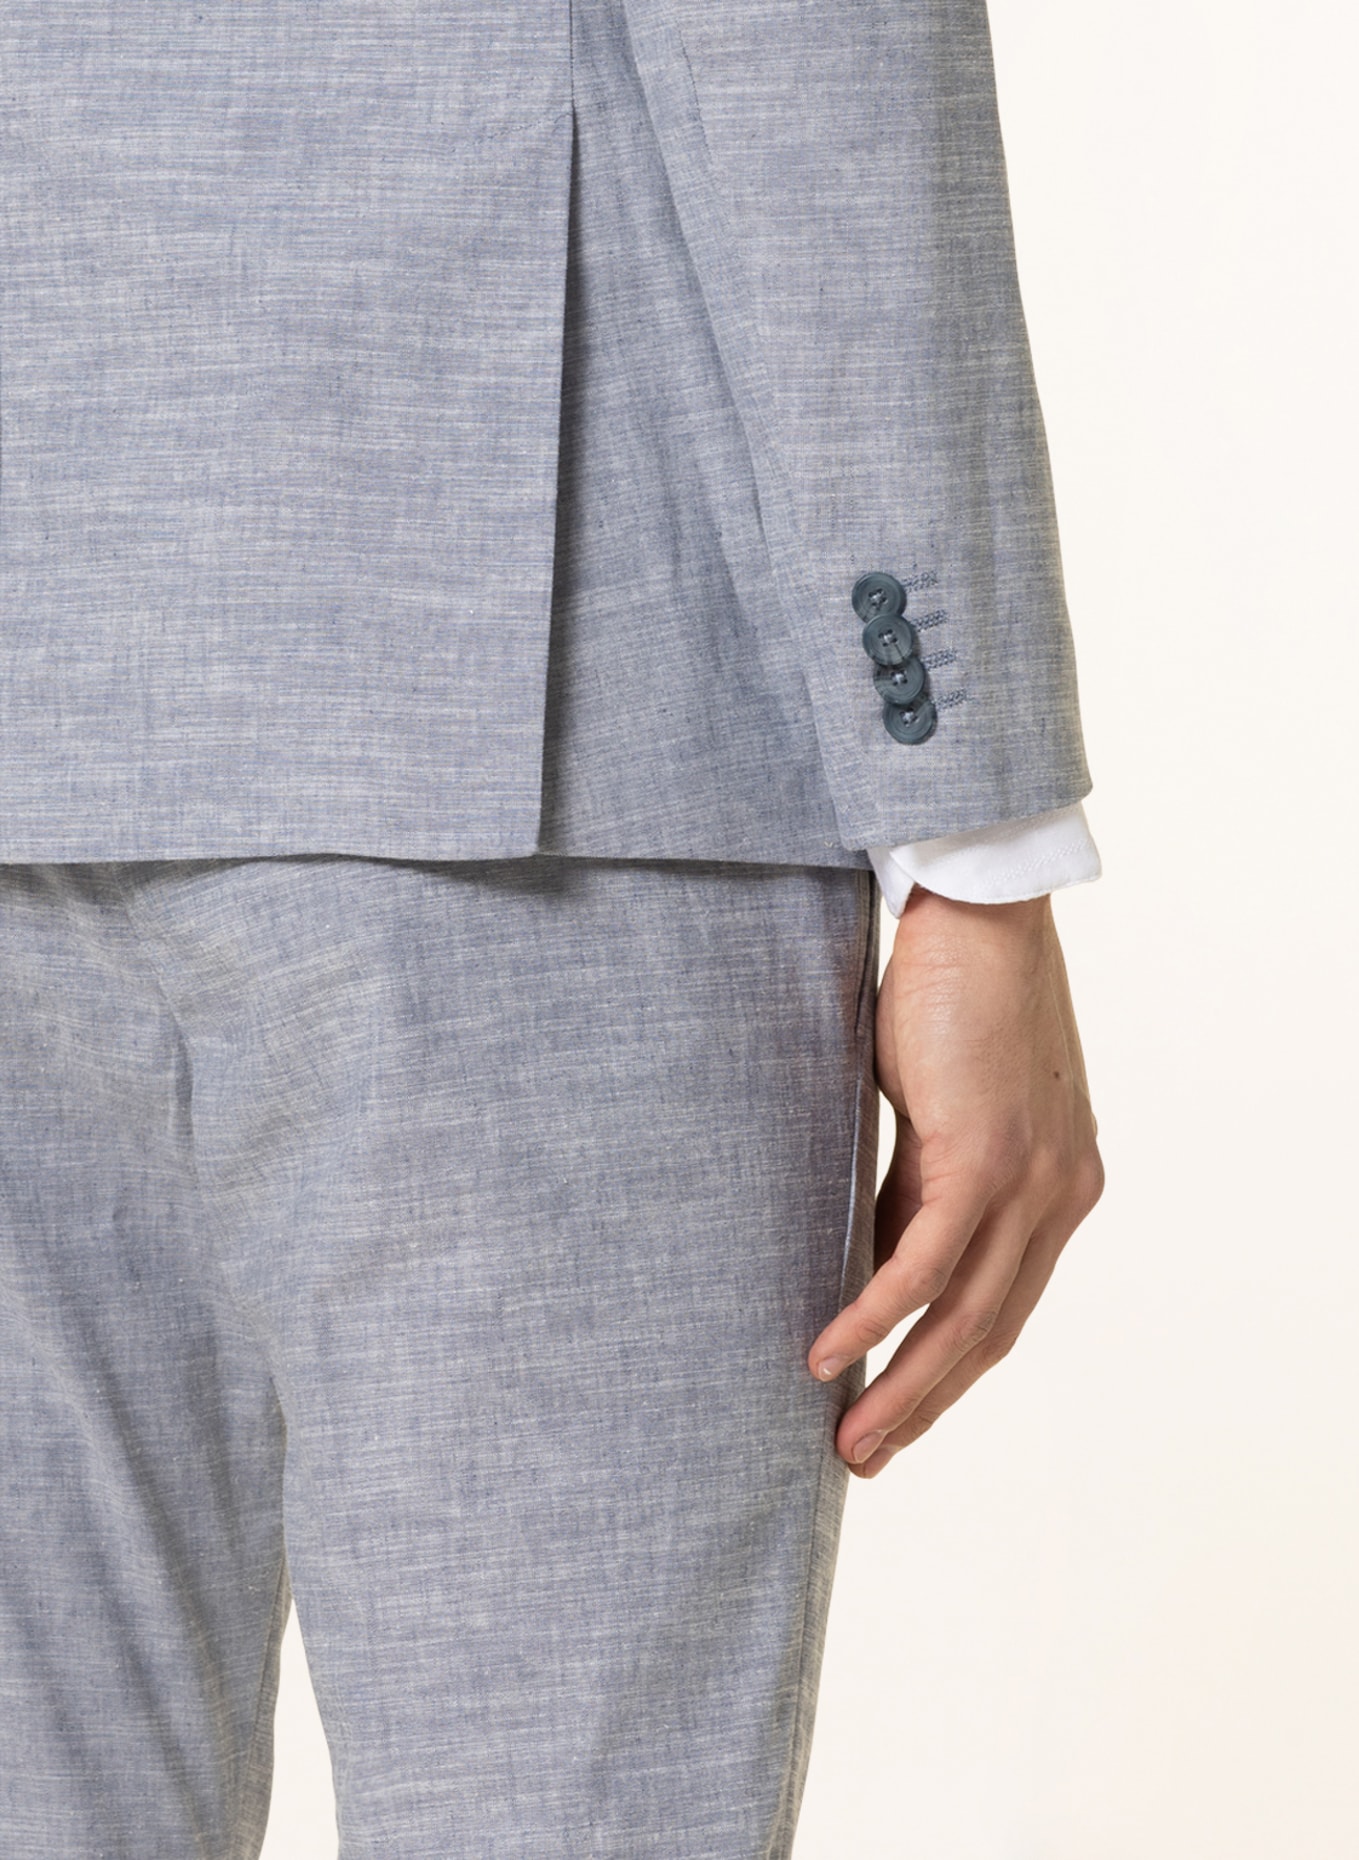 PAUL Suit jacket slim fit with linen, Color: 001 Light Blue (Image 6)